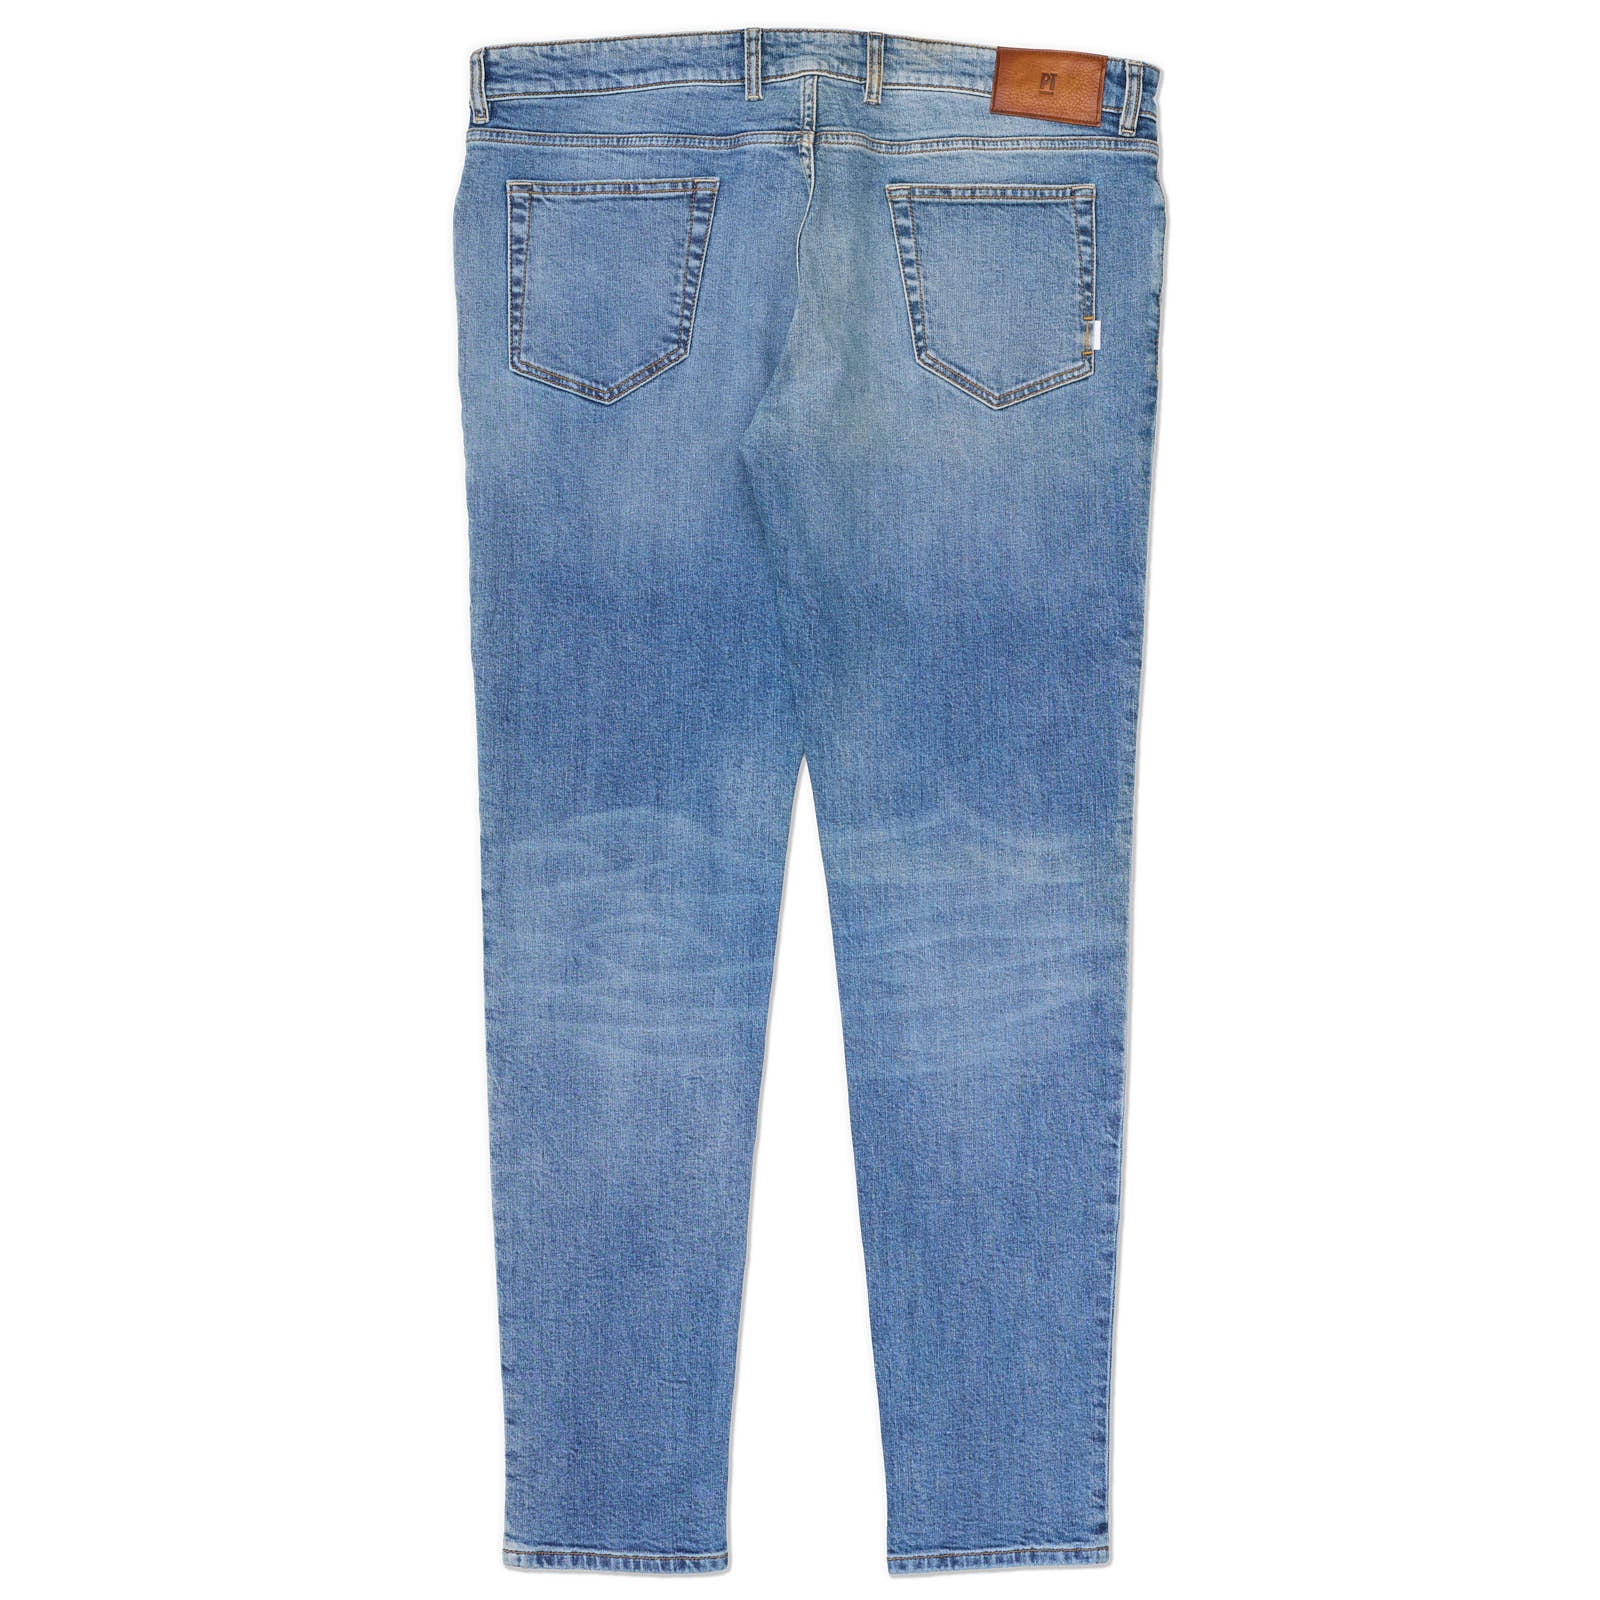 PT05 "Swing" Light Blue Denim Cotton Slim Fit Jeans Pants NEW US 40